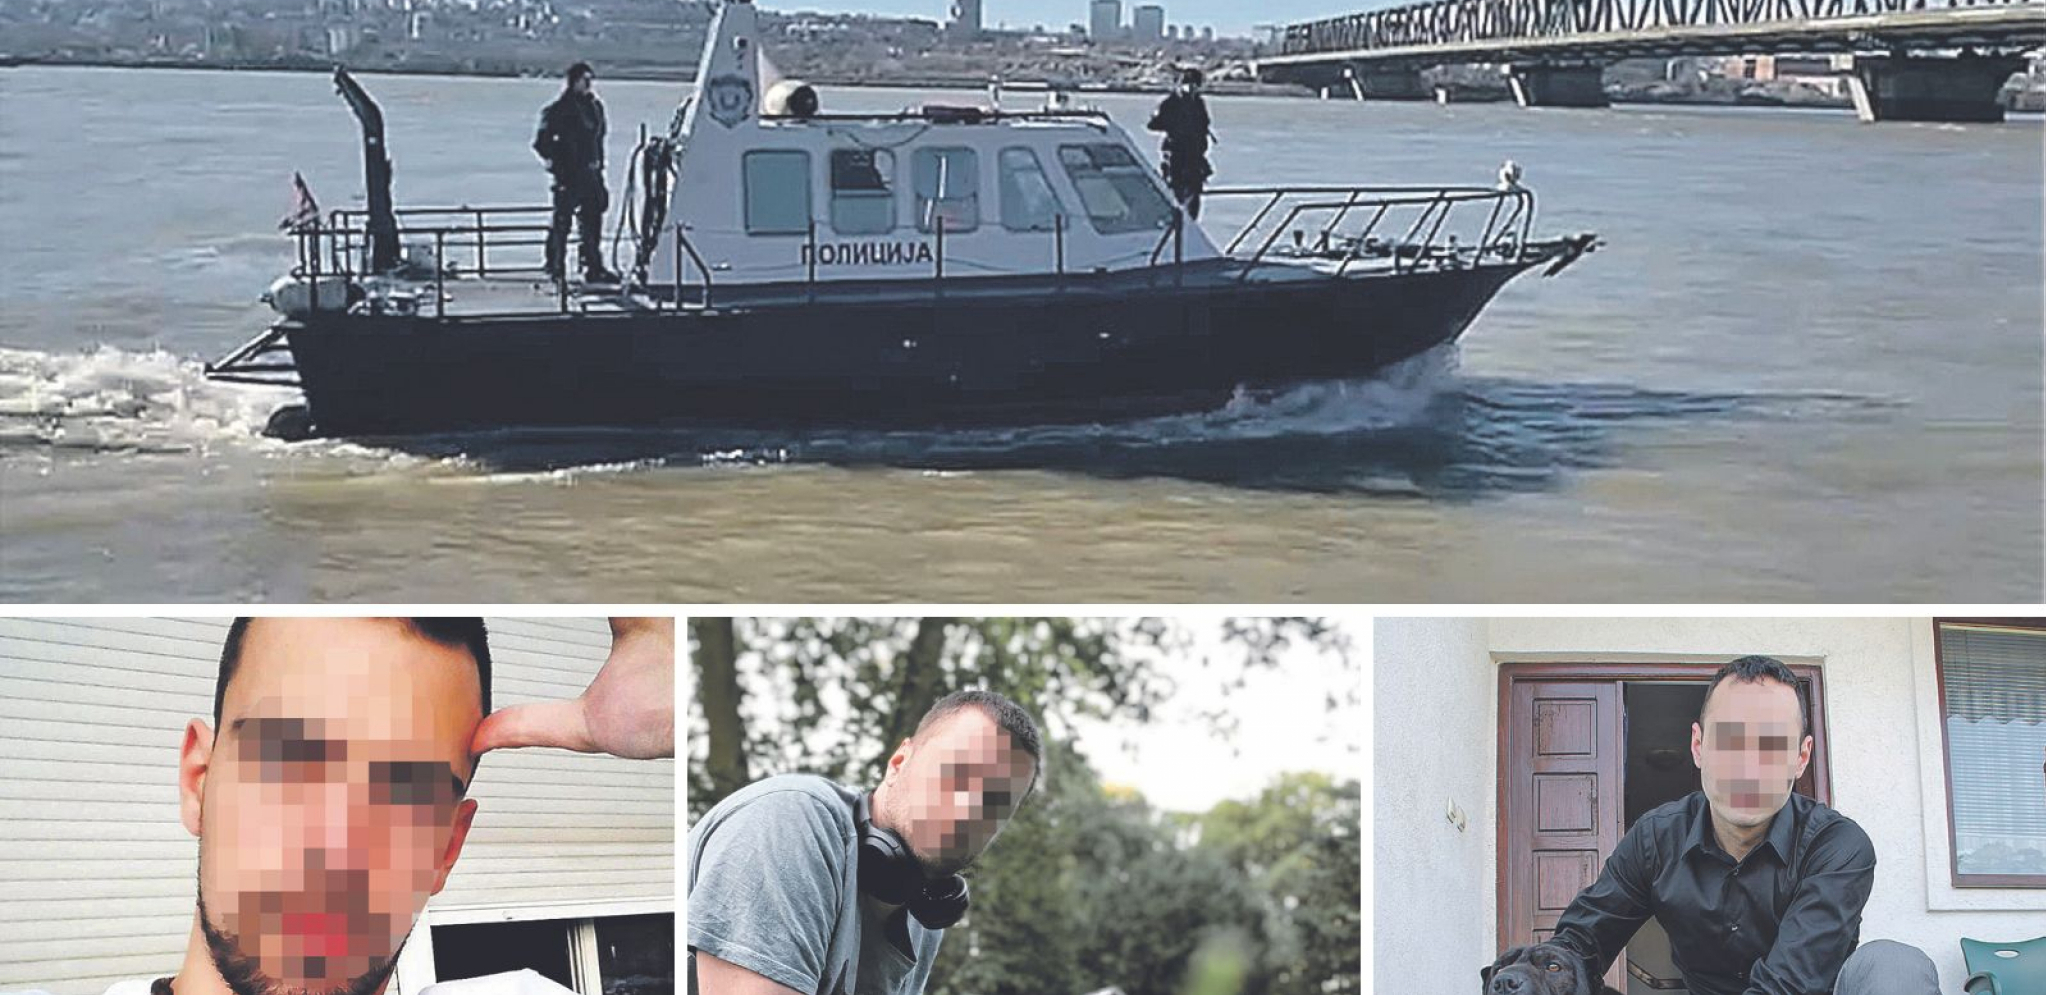 POTRAGA JE ZAVRŠENA Rekonstrukcija: Tri prijatelja nestala u Dunavu: Nakon 26 dana ovde su isplivala tela